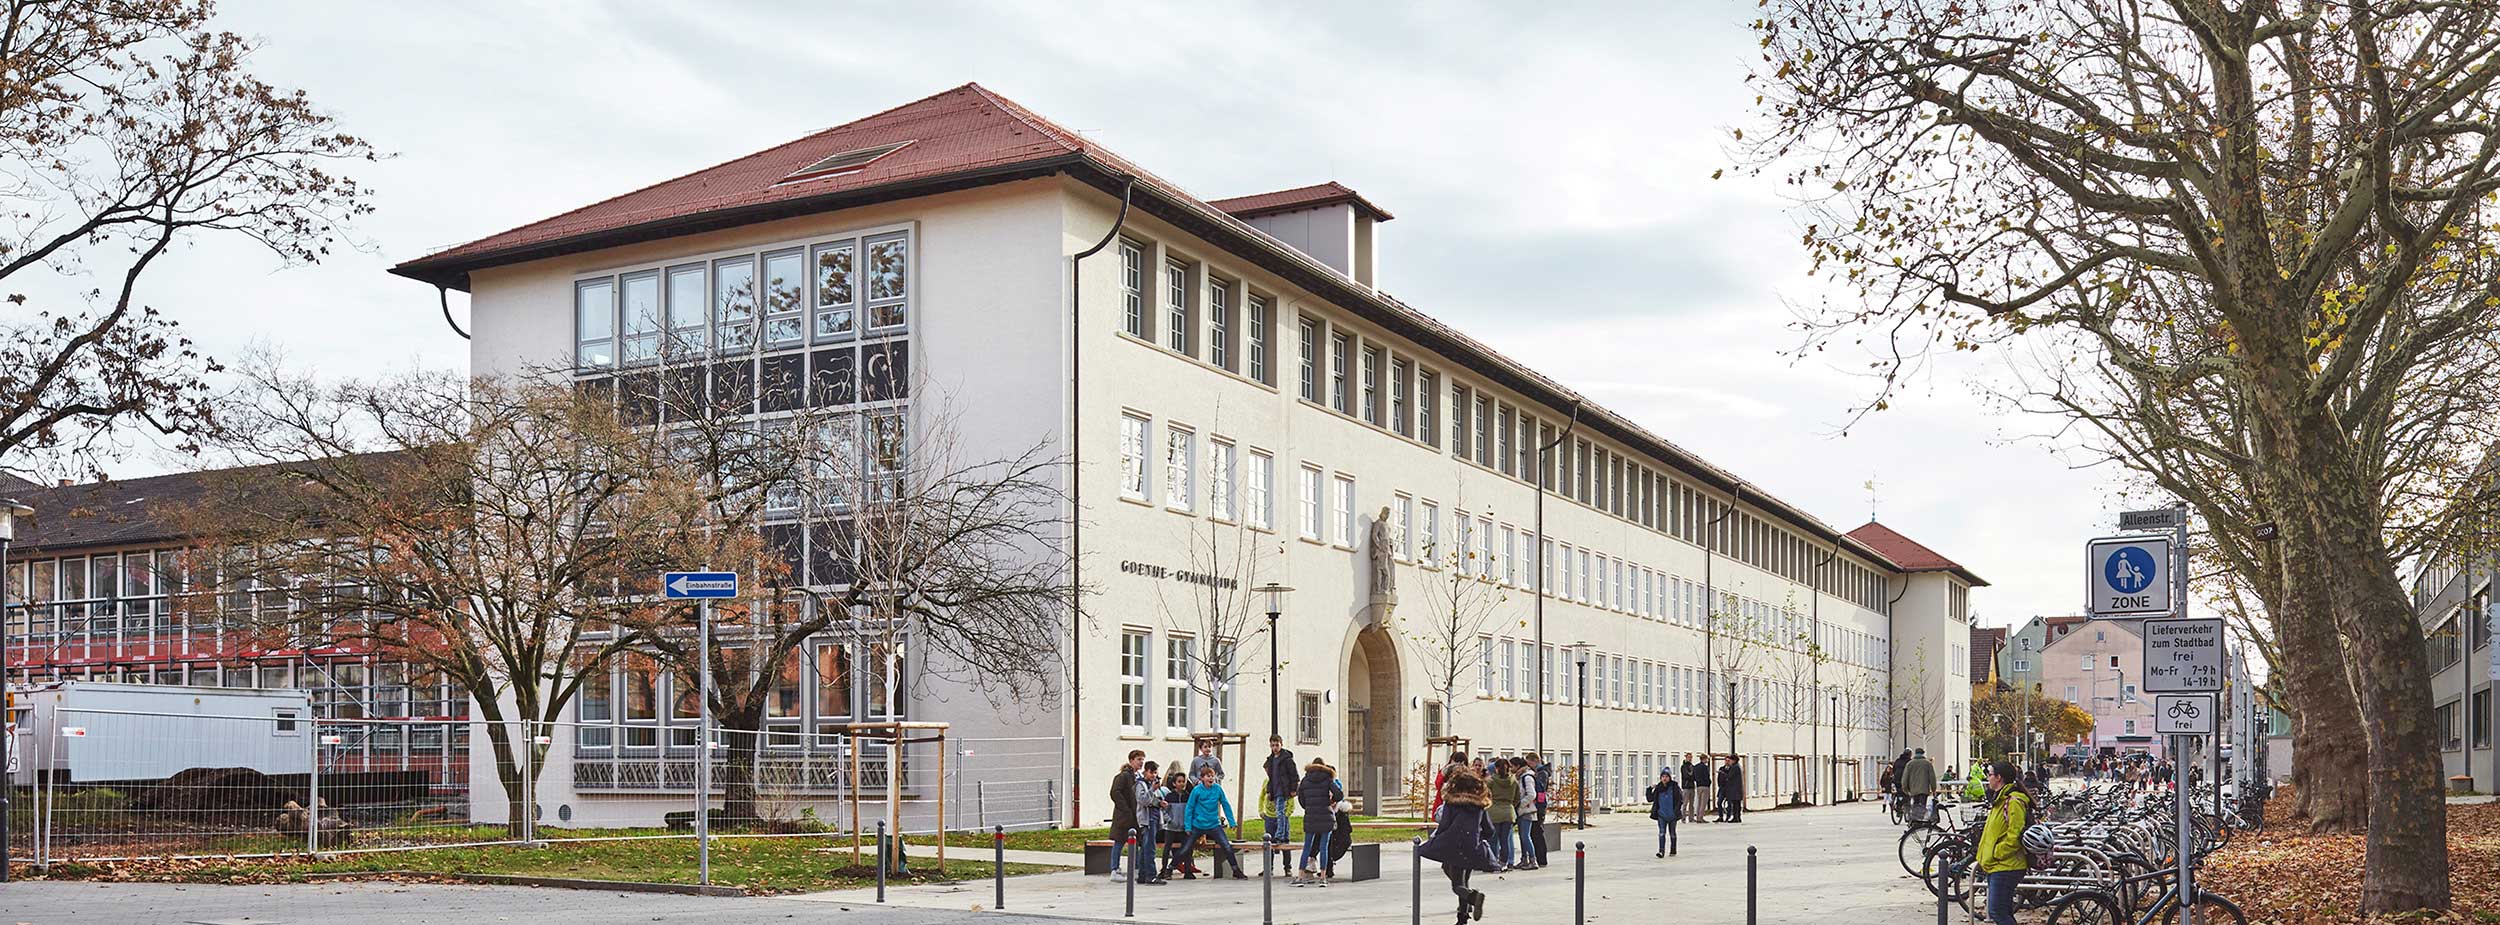 Aussenansicht Goethe Gymnasium